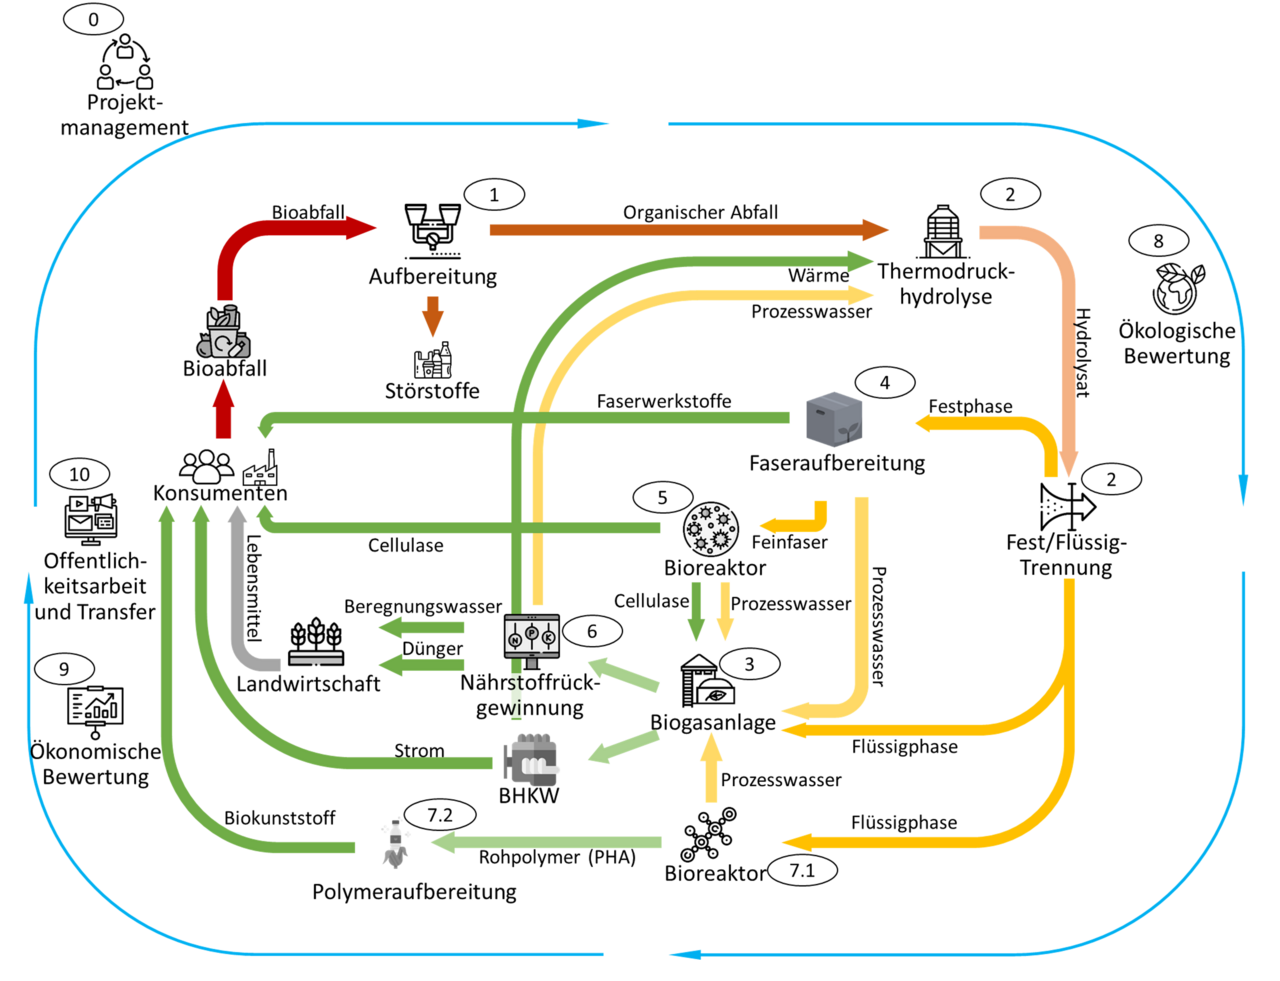 Kreislaufschema des Vorhabens BW2Pro: Weiterentwicklung einer bestehenden Bioabfallverwertungsanlage zur ganzheitlichen stofflichen und energetischen Verwertung des Abfallaufkommens.